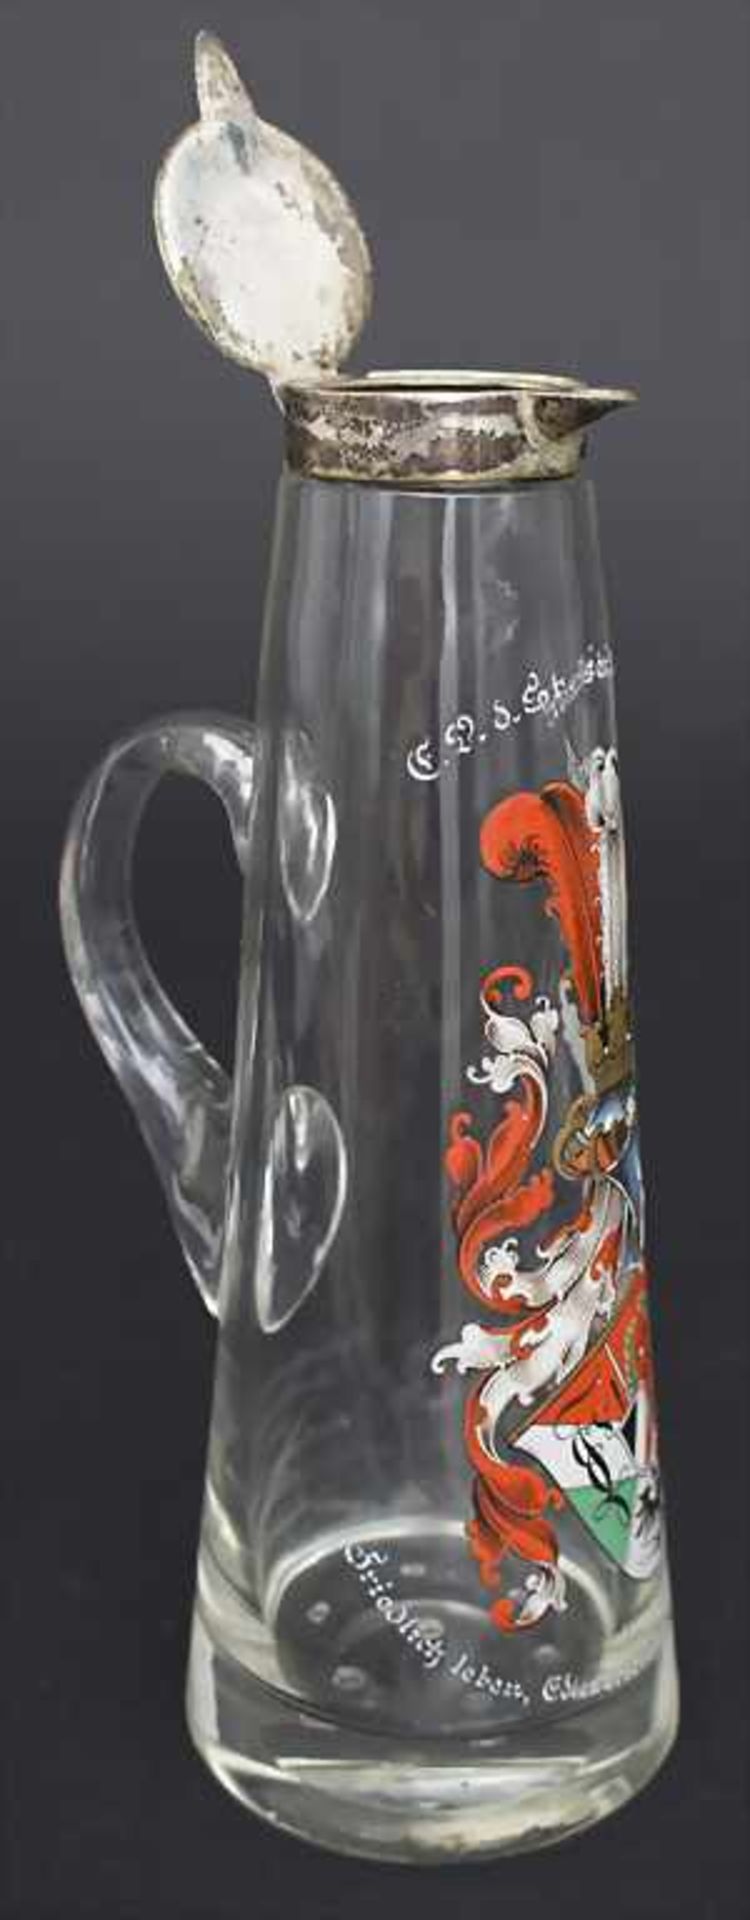 Burschenschaft-Schenkkrug / Fraternity jug, um 1903Material: durchsichtiges Glas, Emailmalerei,Höhe: - Bild 4 aus 9